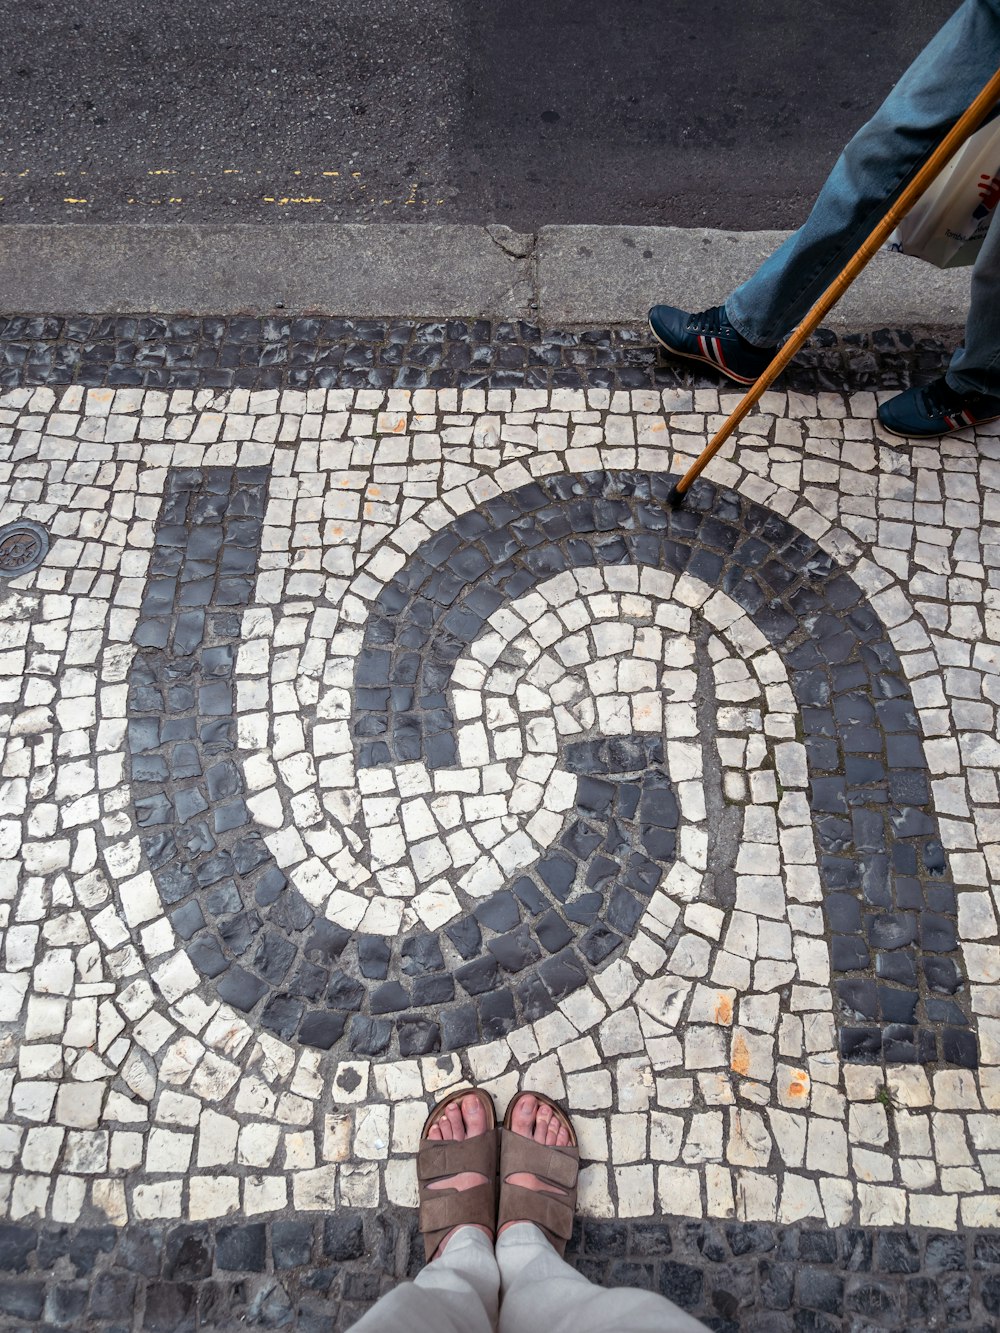 uma pessoa em frente a uma placa em uma calçada